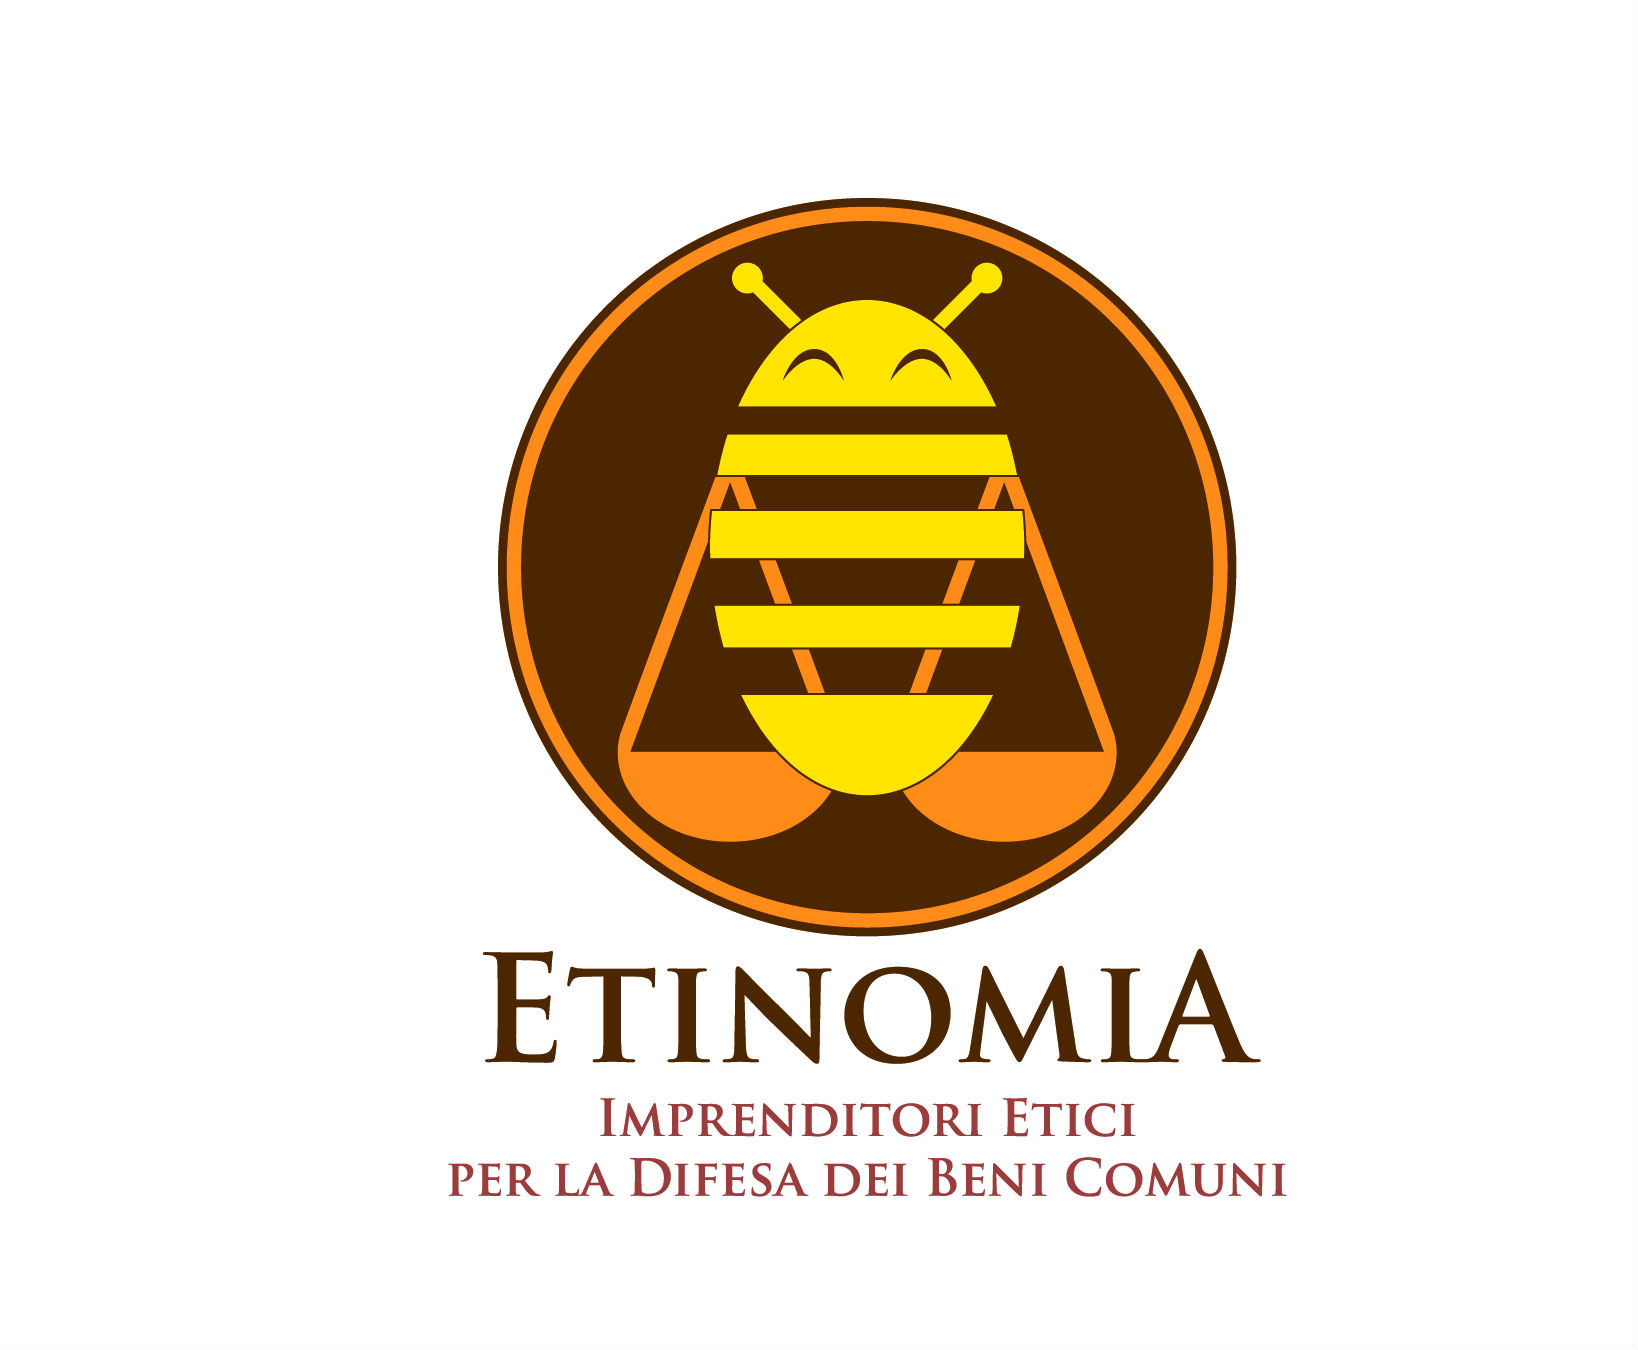 Etinomia, per ridare centralità all’etica nell’economia